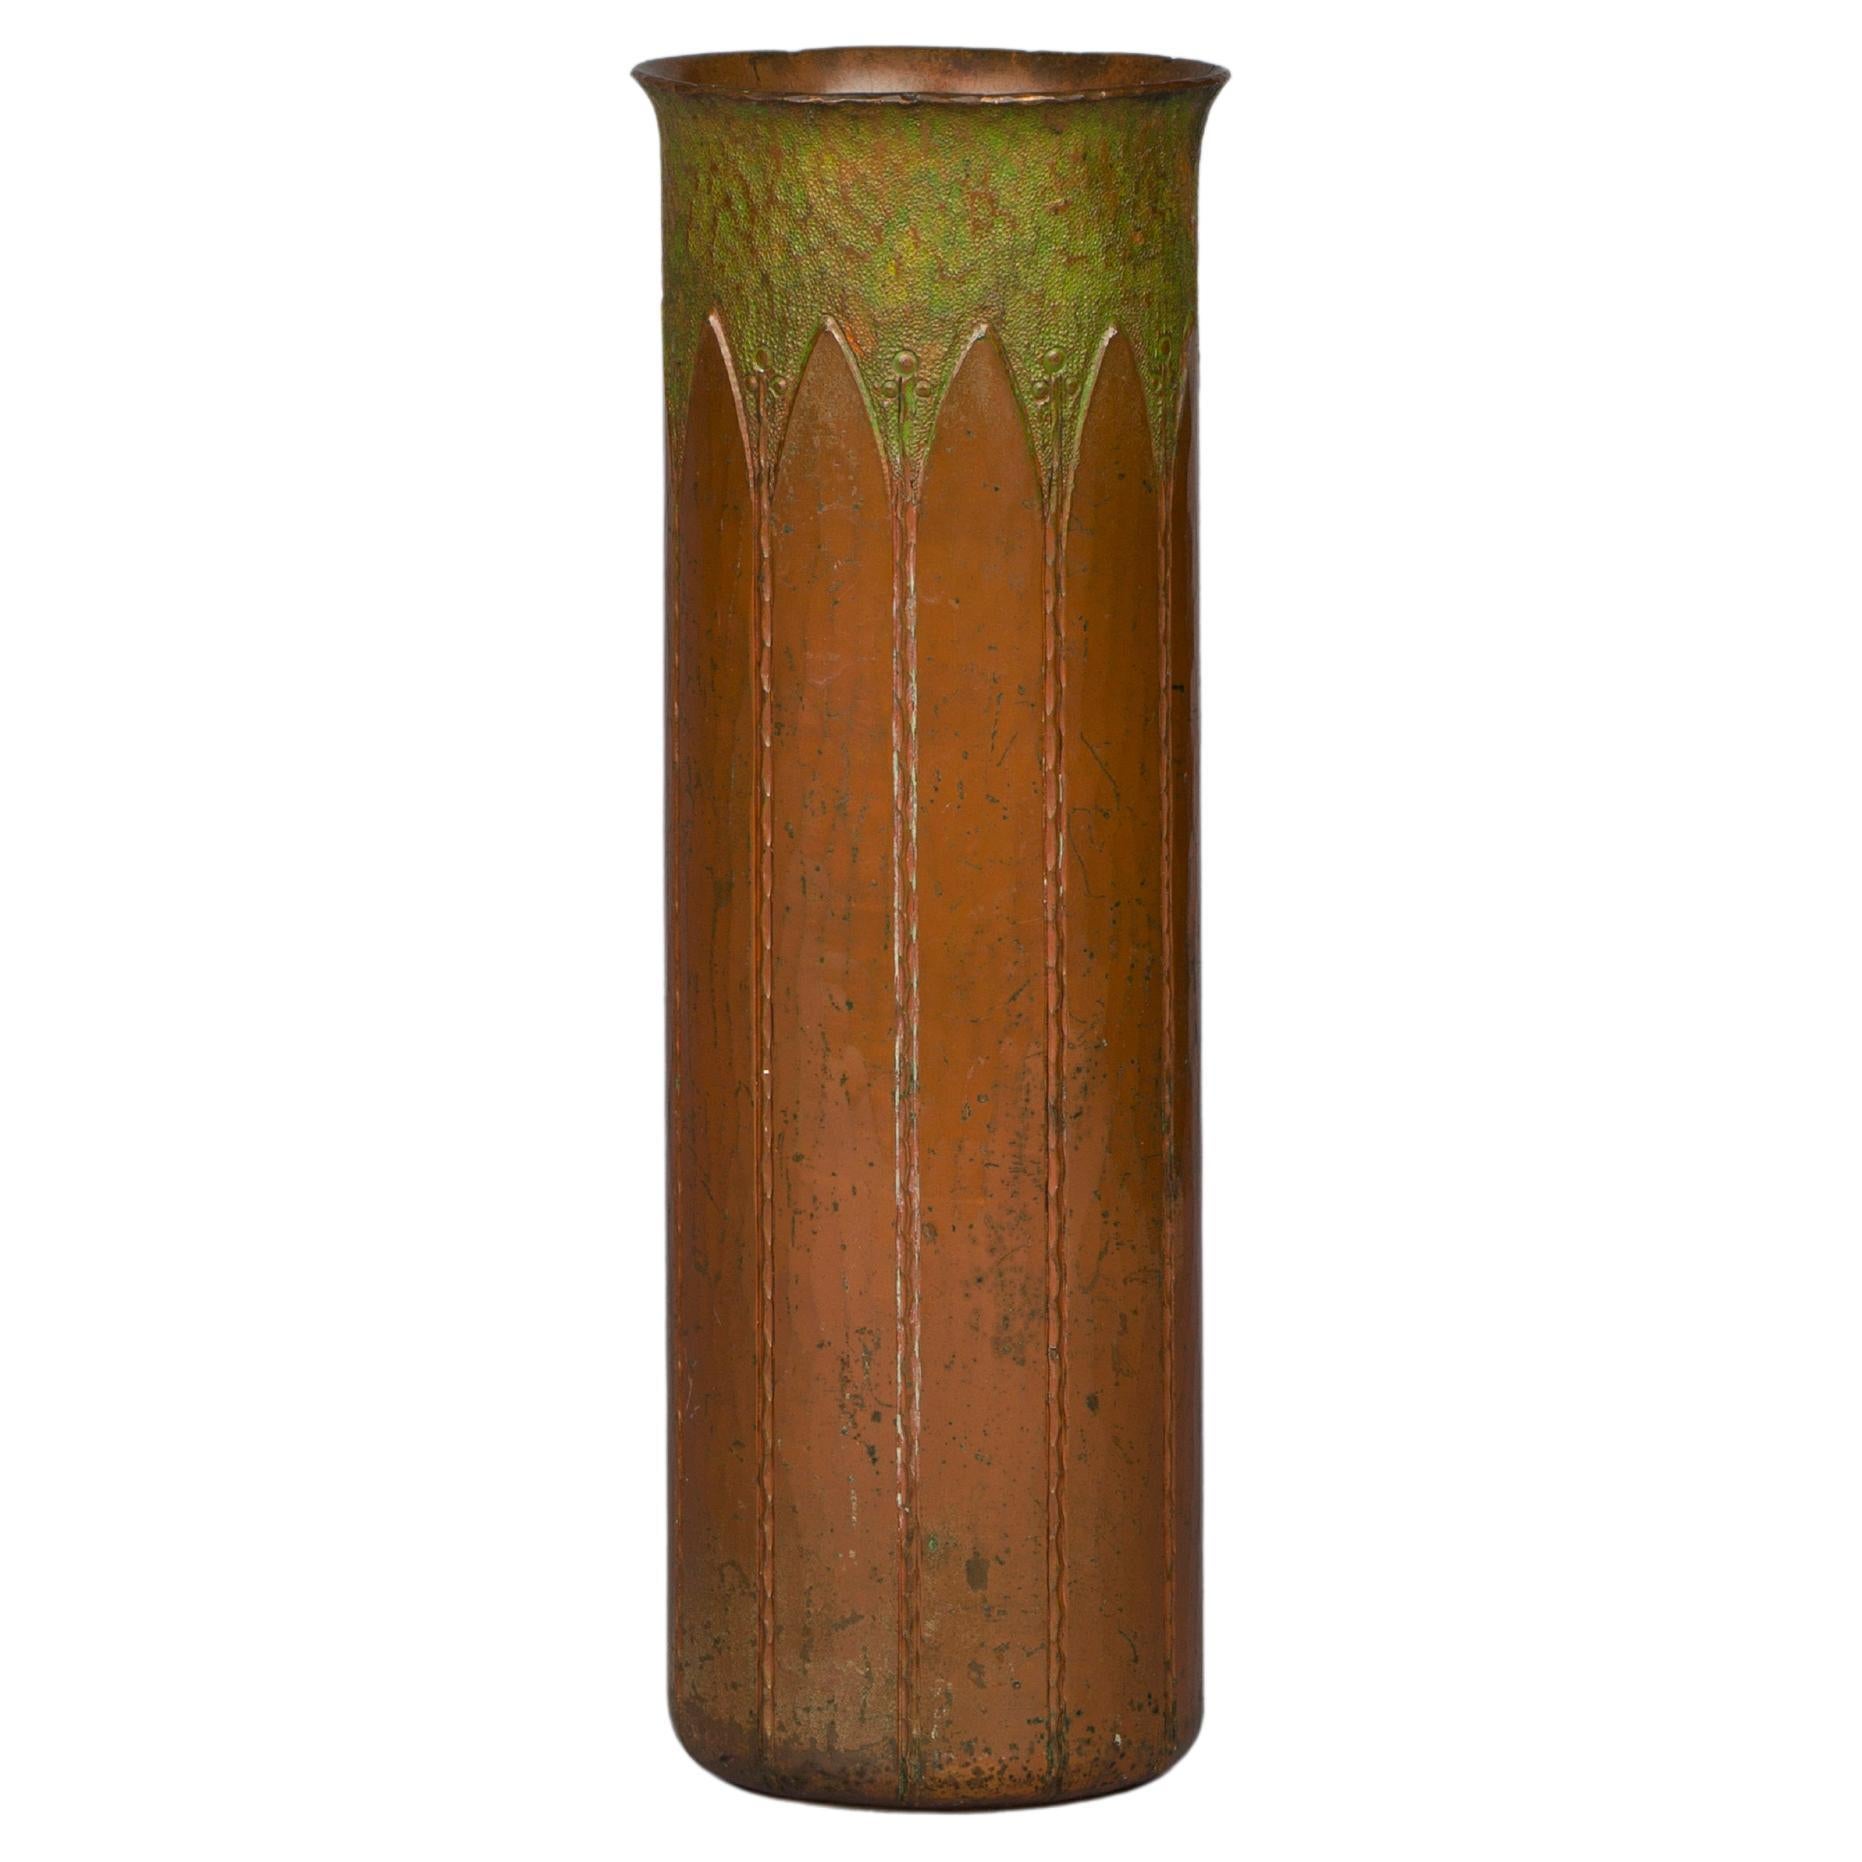 Seltene zylindrische Vase aus gehämmertem Kupfer, Roycroft, um 1910